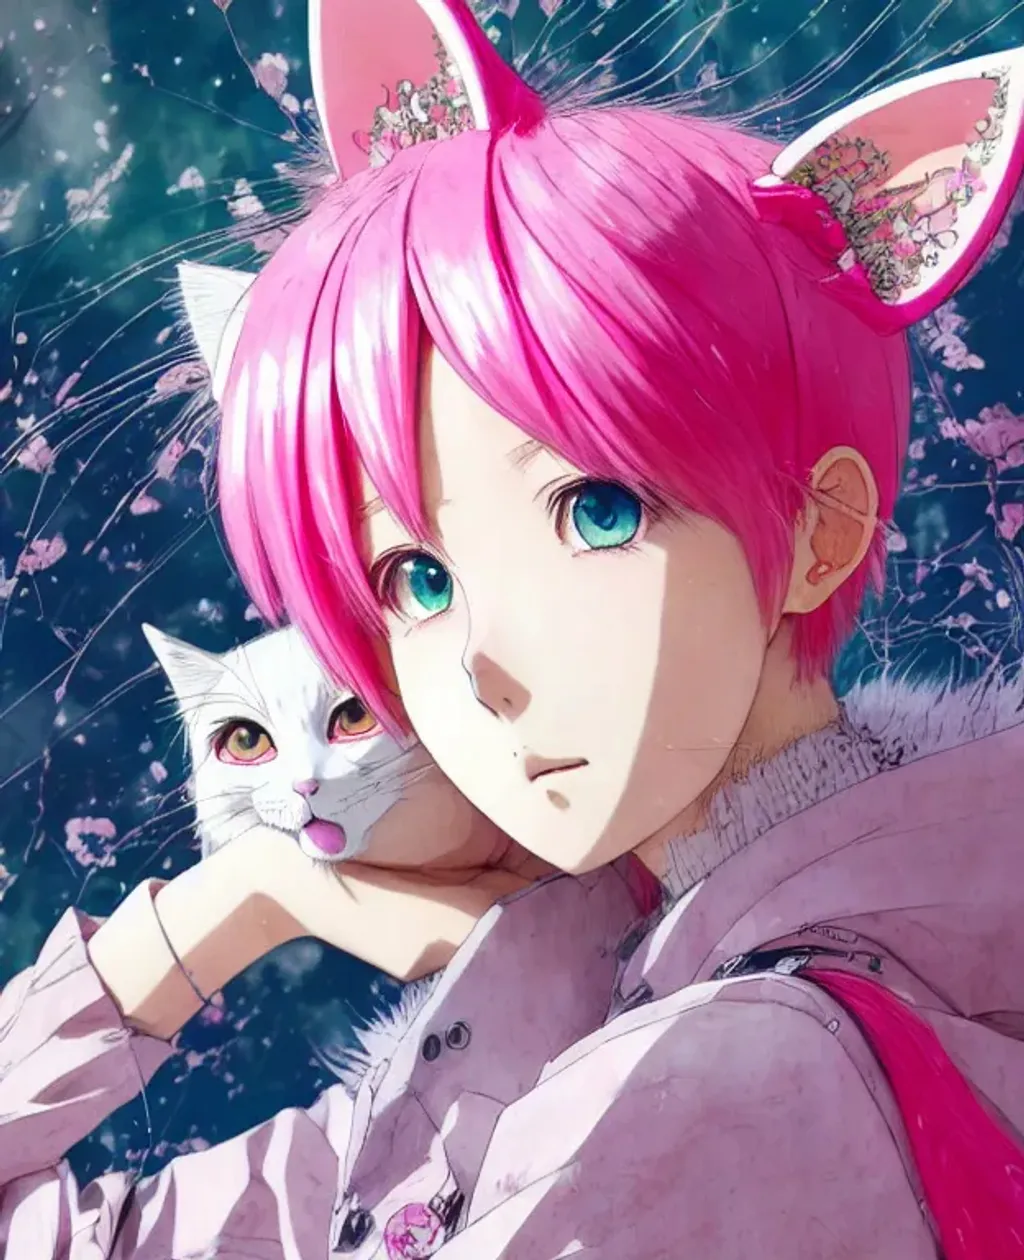 Anime Girl in Hoodie with Cat Ear Headphones